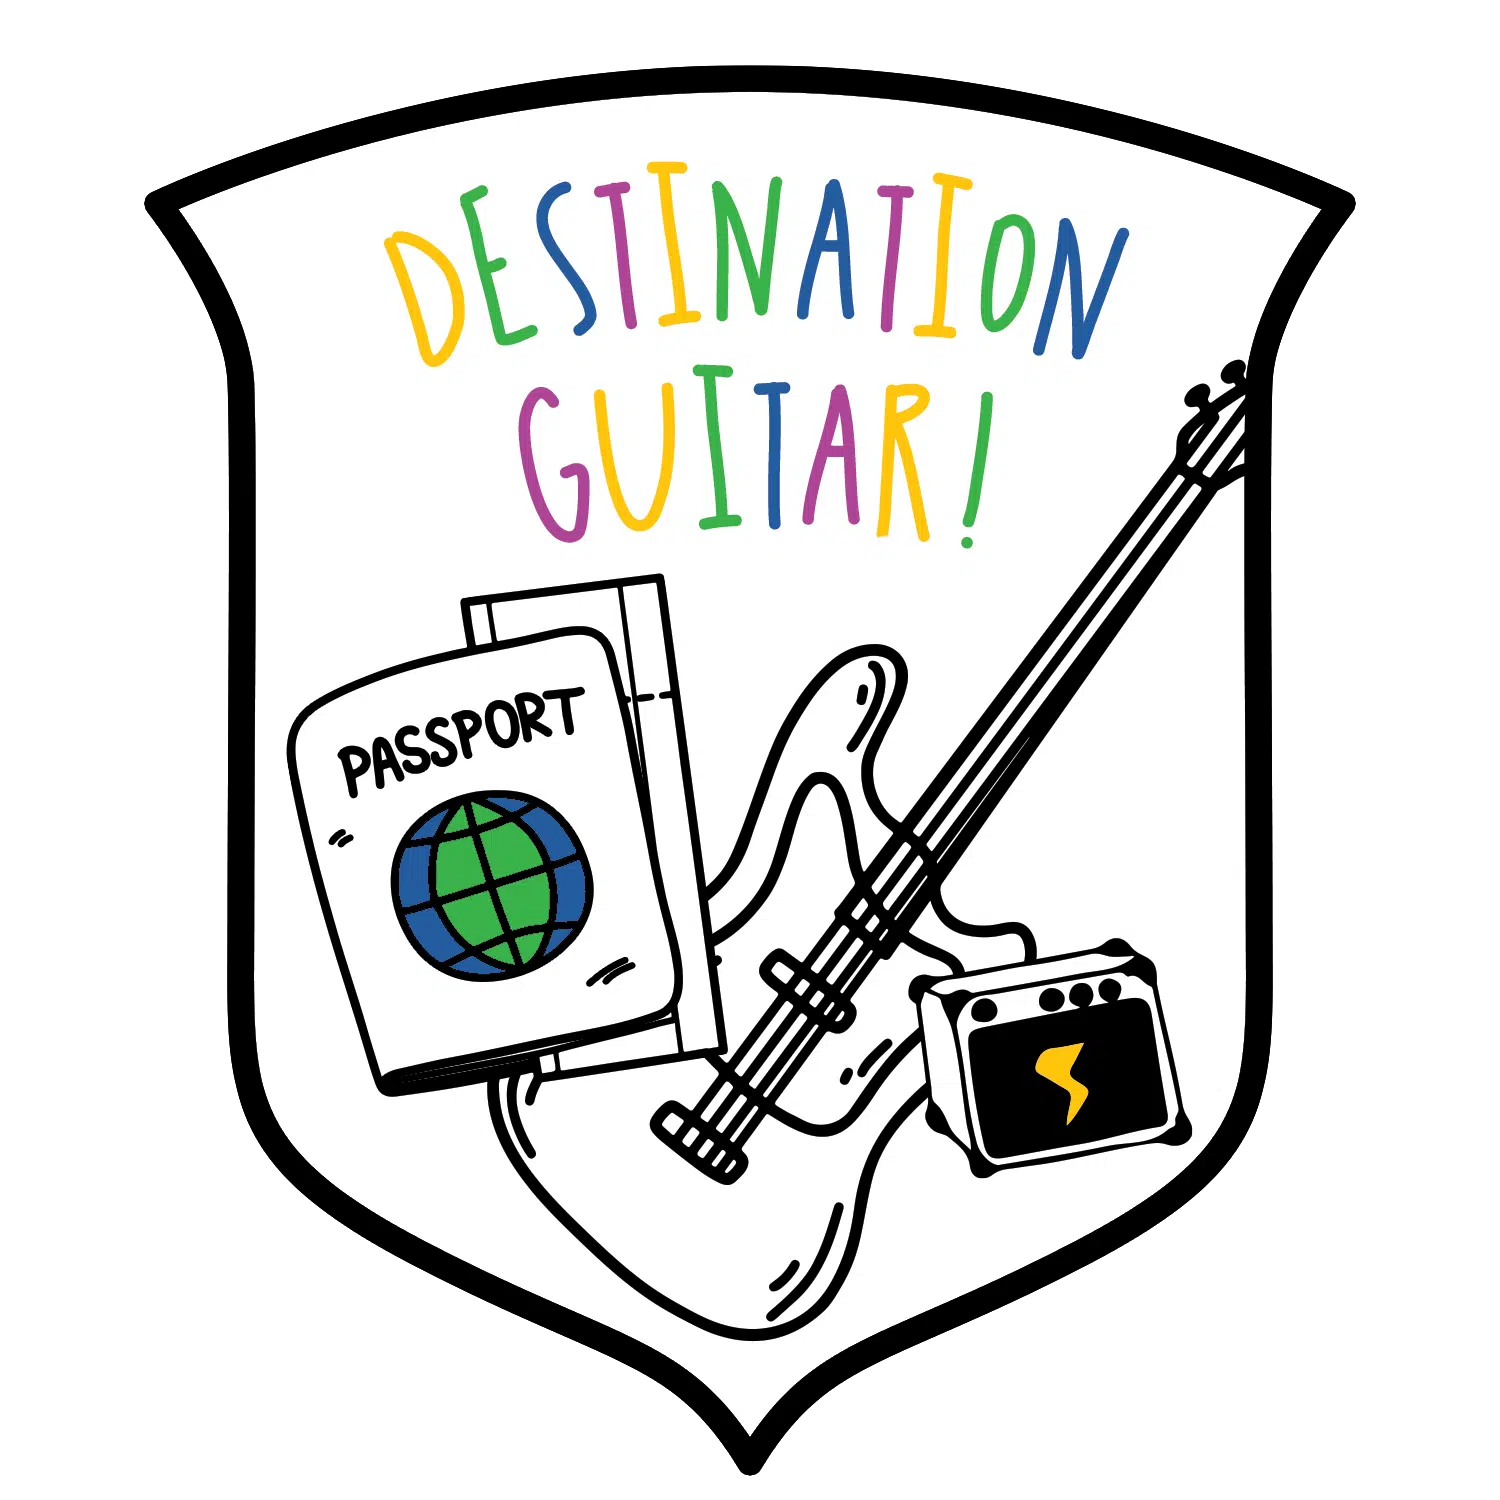 Destination Guitar!